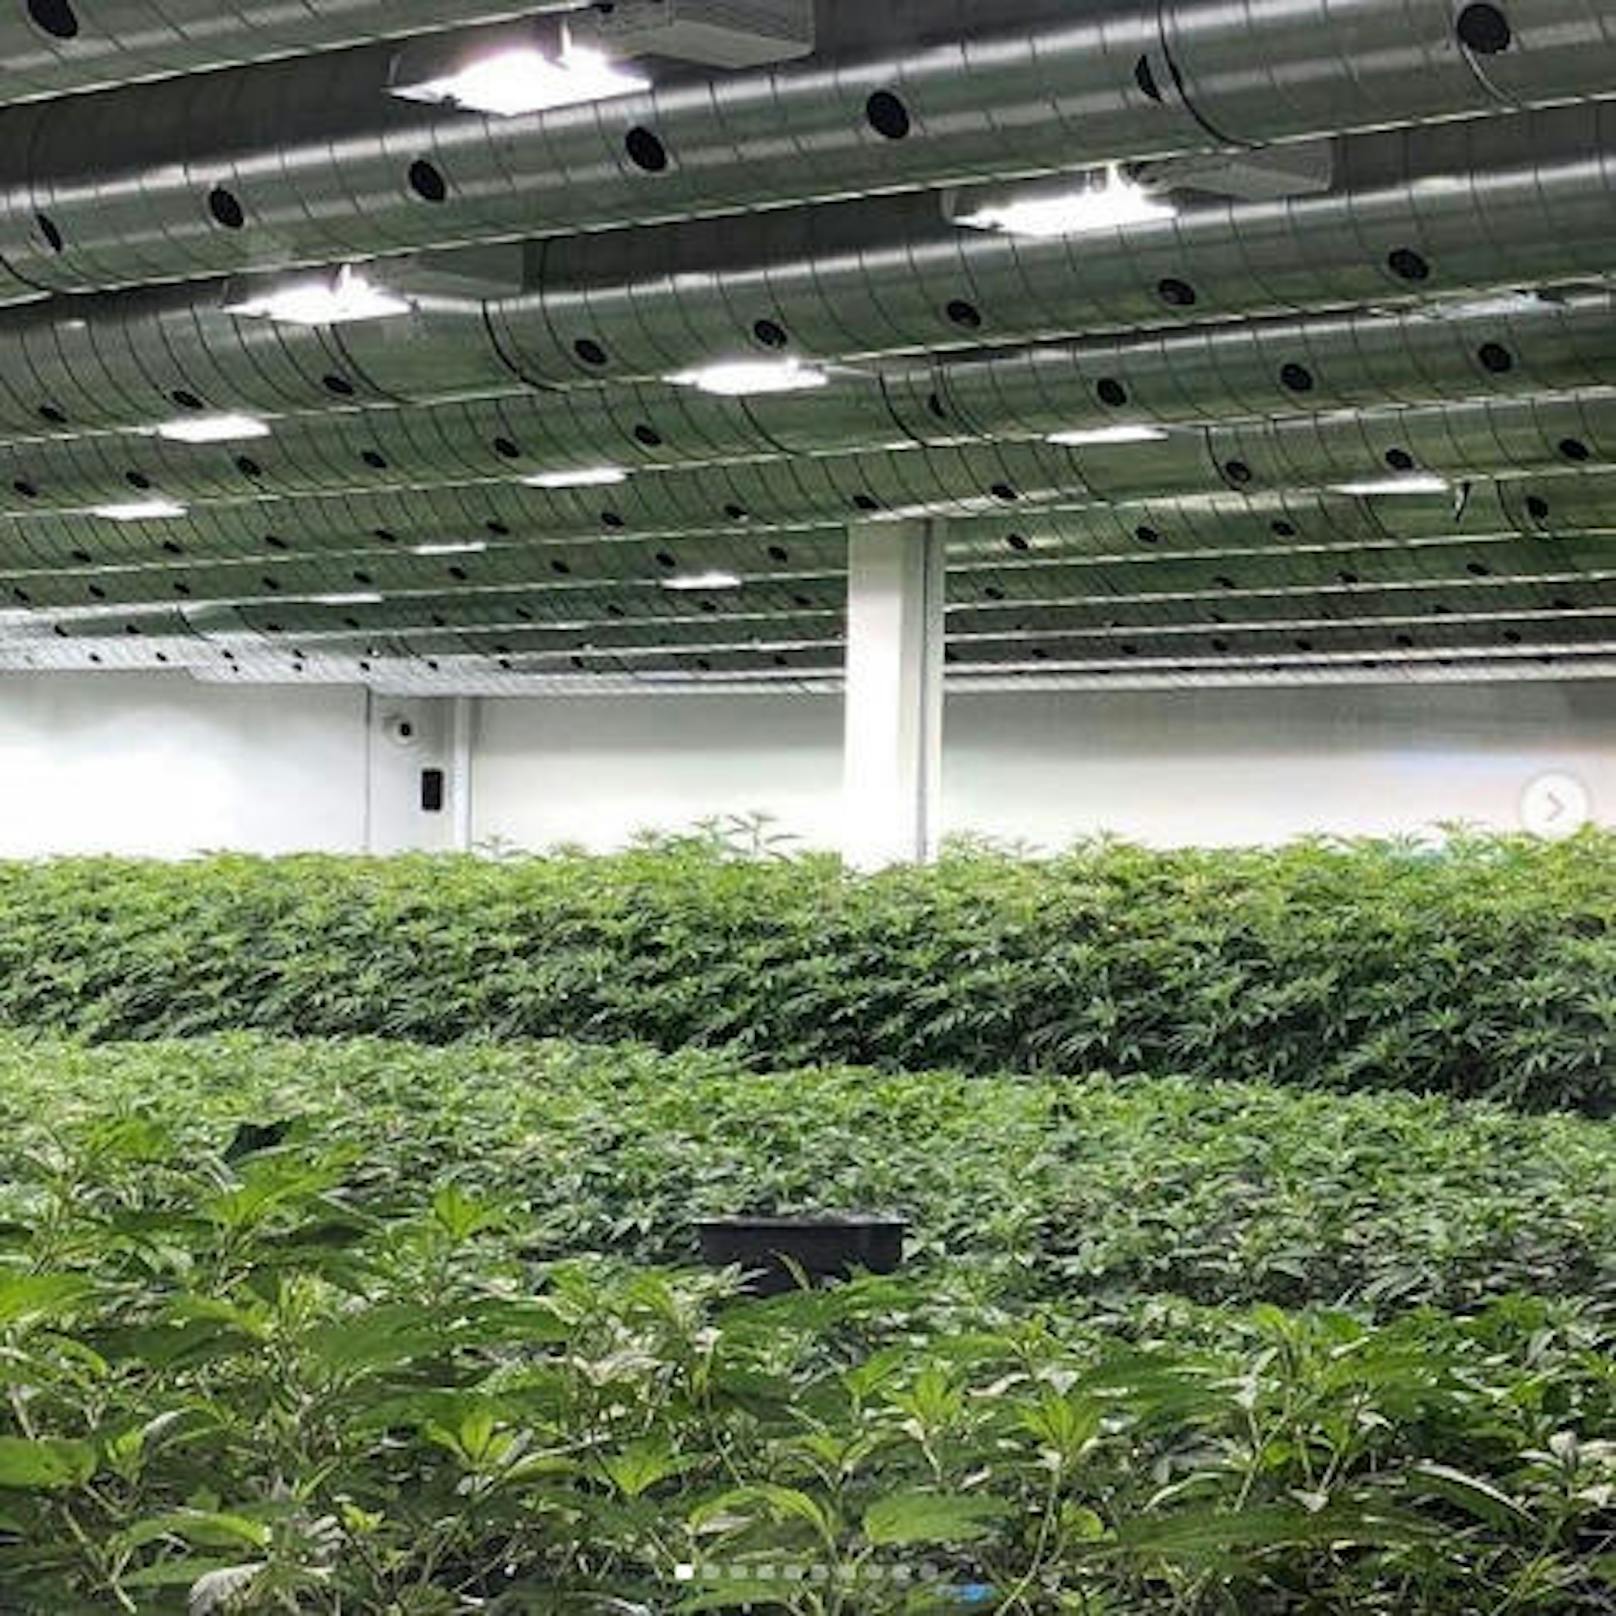 28.3.2019: Seth Rogen vertreibt mit seinem Kollegen Evan Goldberg Cannabis - und das ganz legal in Kalifornien. Auf Instagram zeigt er seine riesige Plantage.